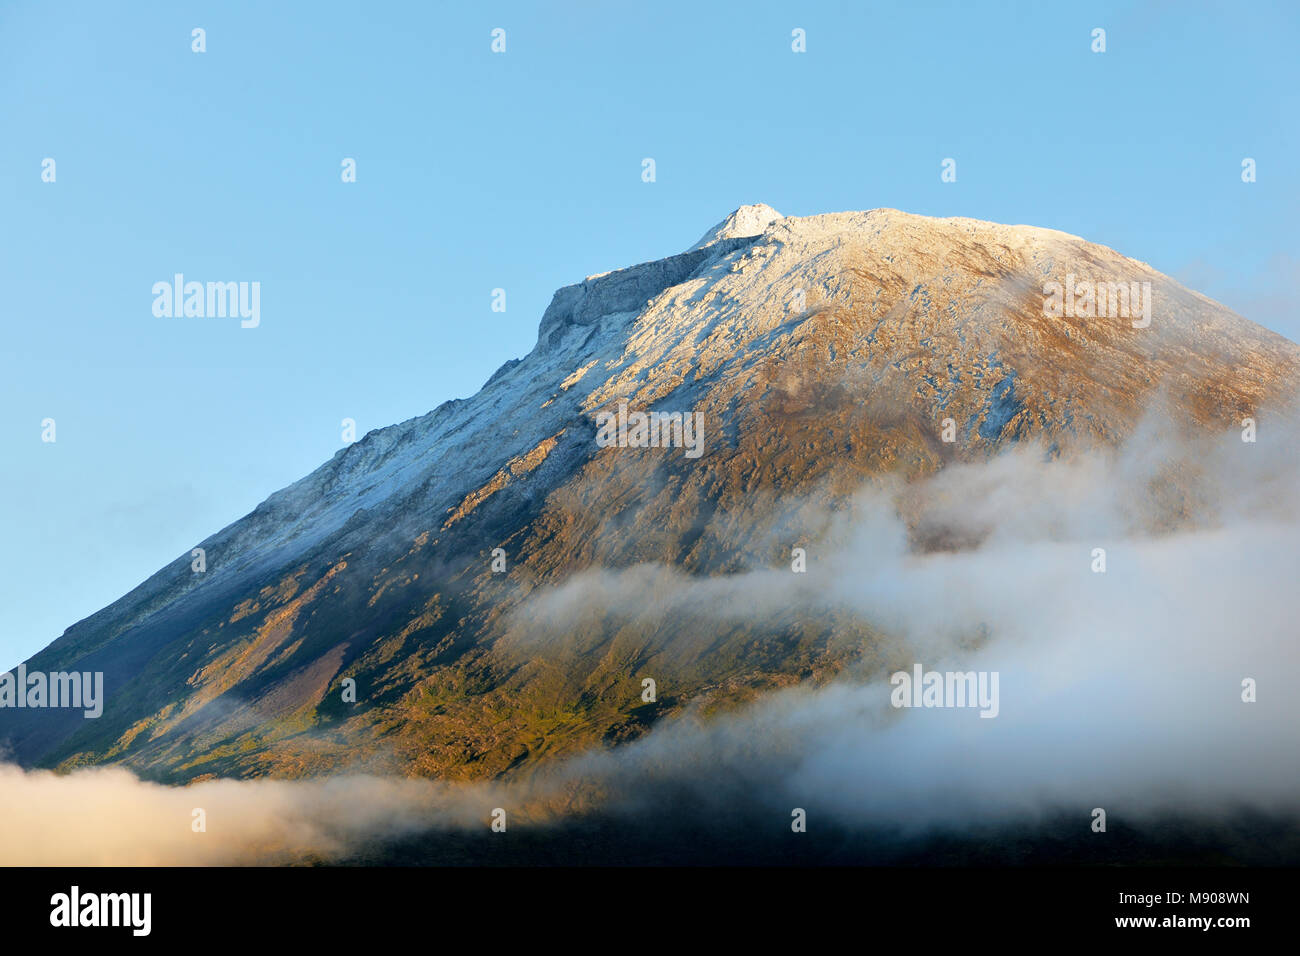 Der Vulkan mit Schnee bedeckt, 2351 Meter hoch, auf der Insel Pico. Der letzte Ausbruch war im Jahr 1720. Azoren, Portugal Stockfoto